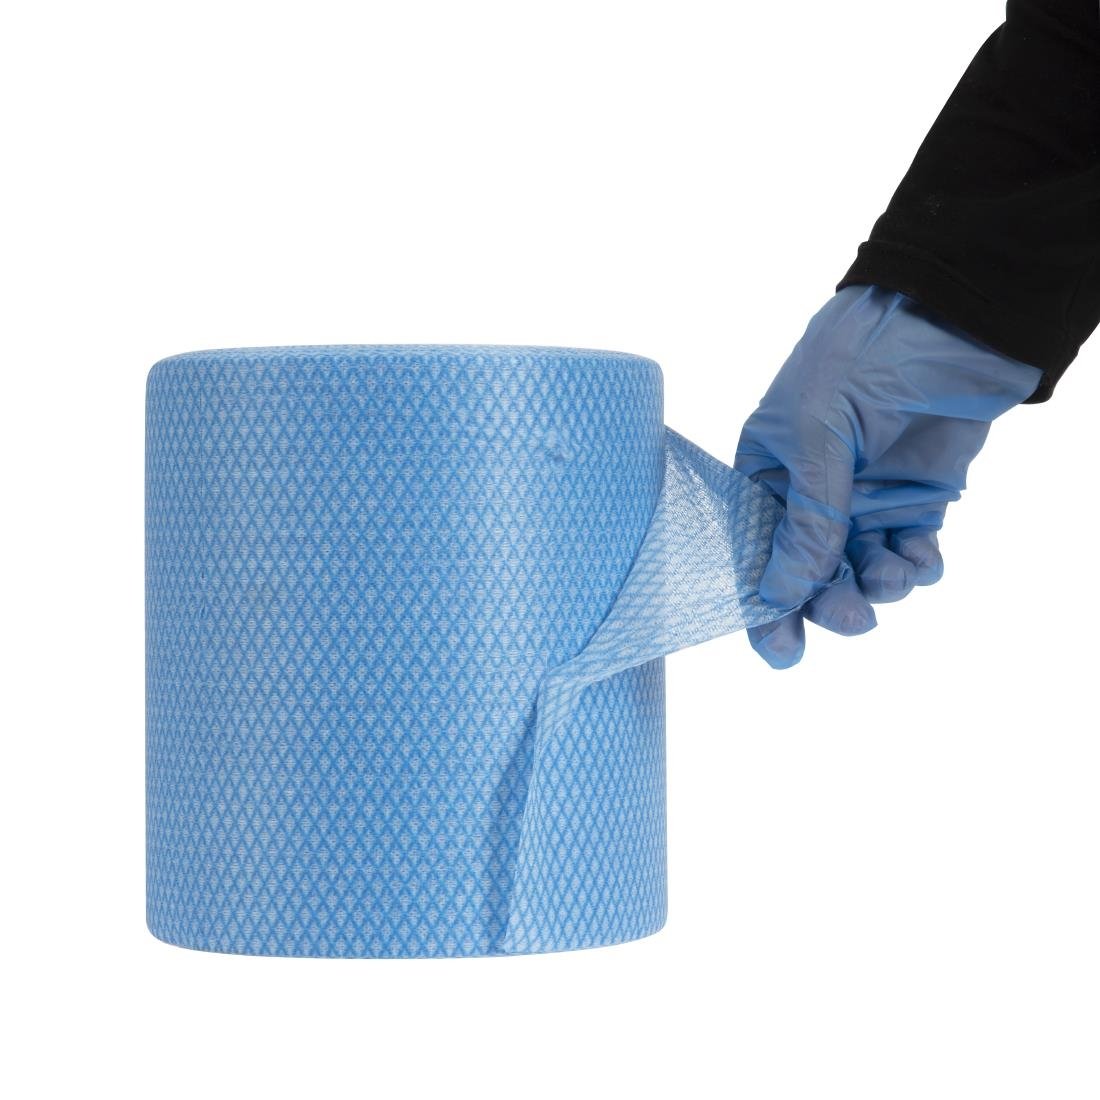 EcoTech Envirolite Super antibacteriële schoonmaakdoekjes blauw (2 x 500 stuks)